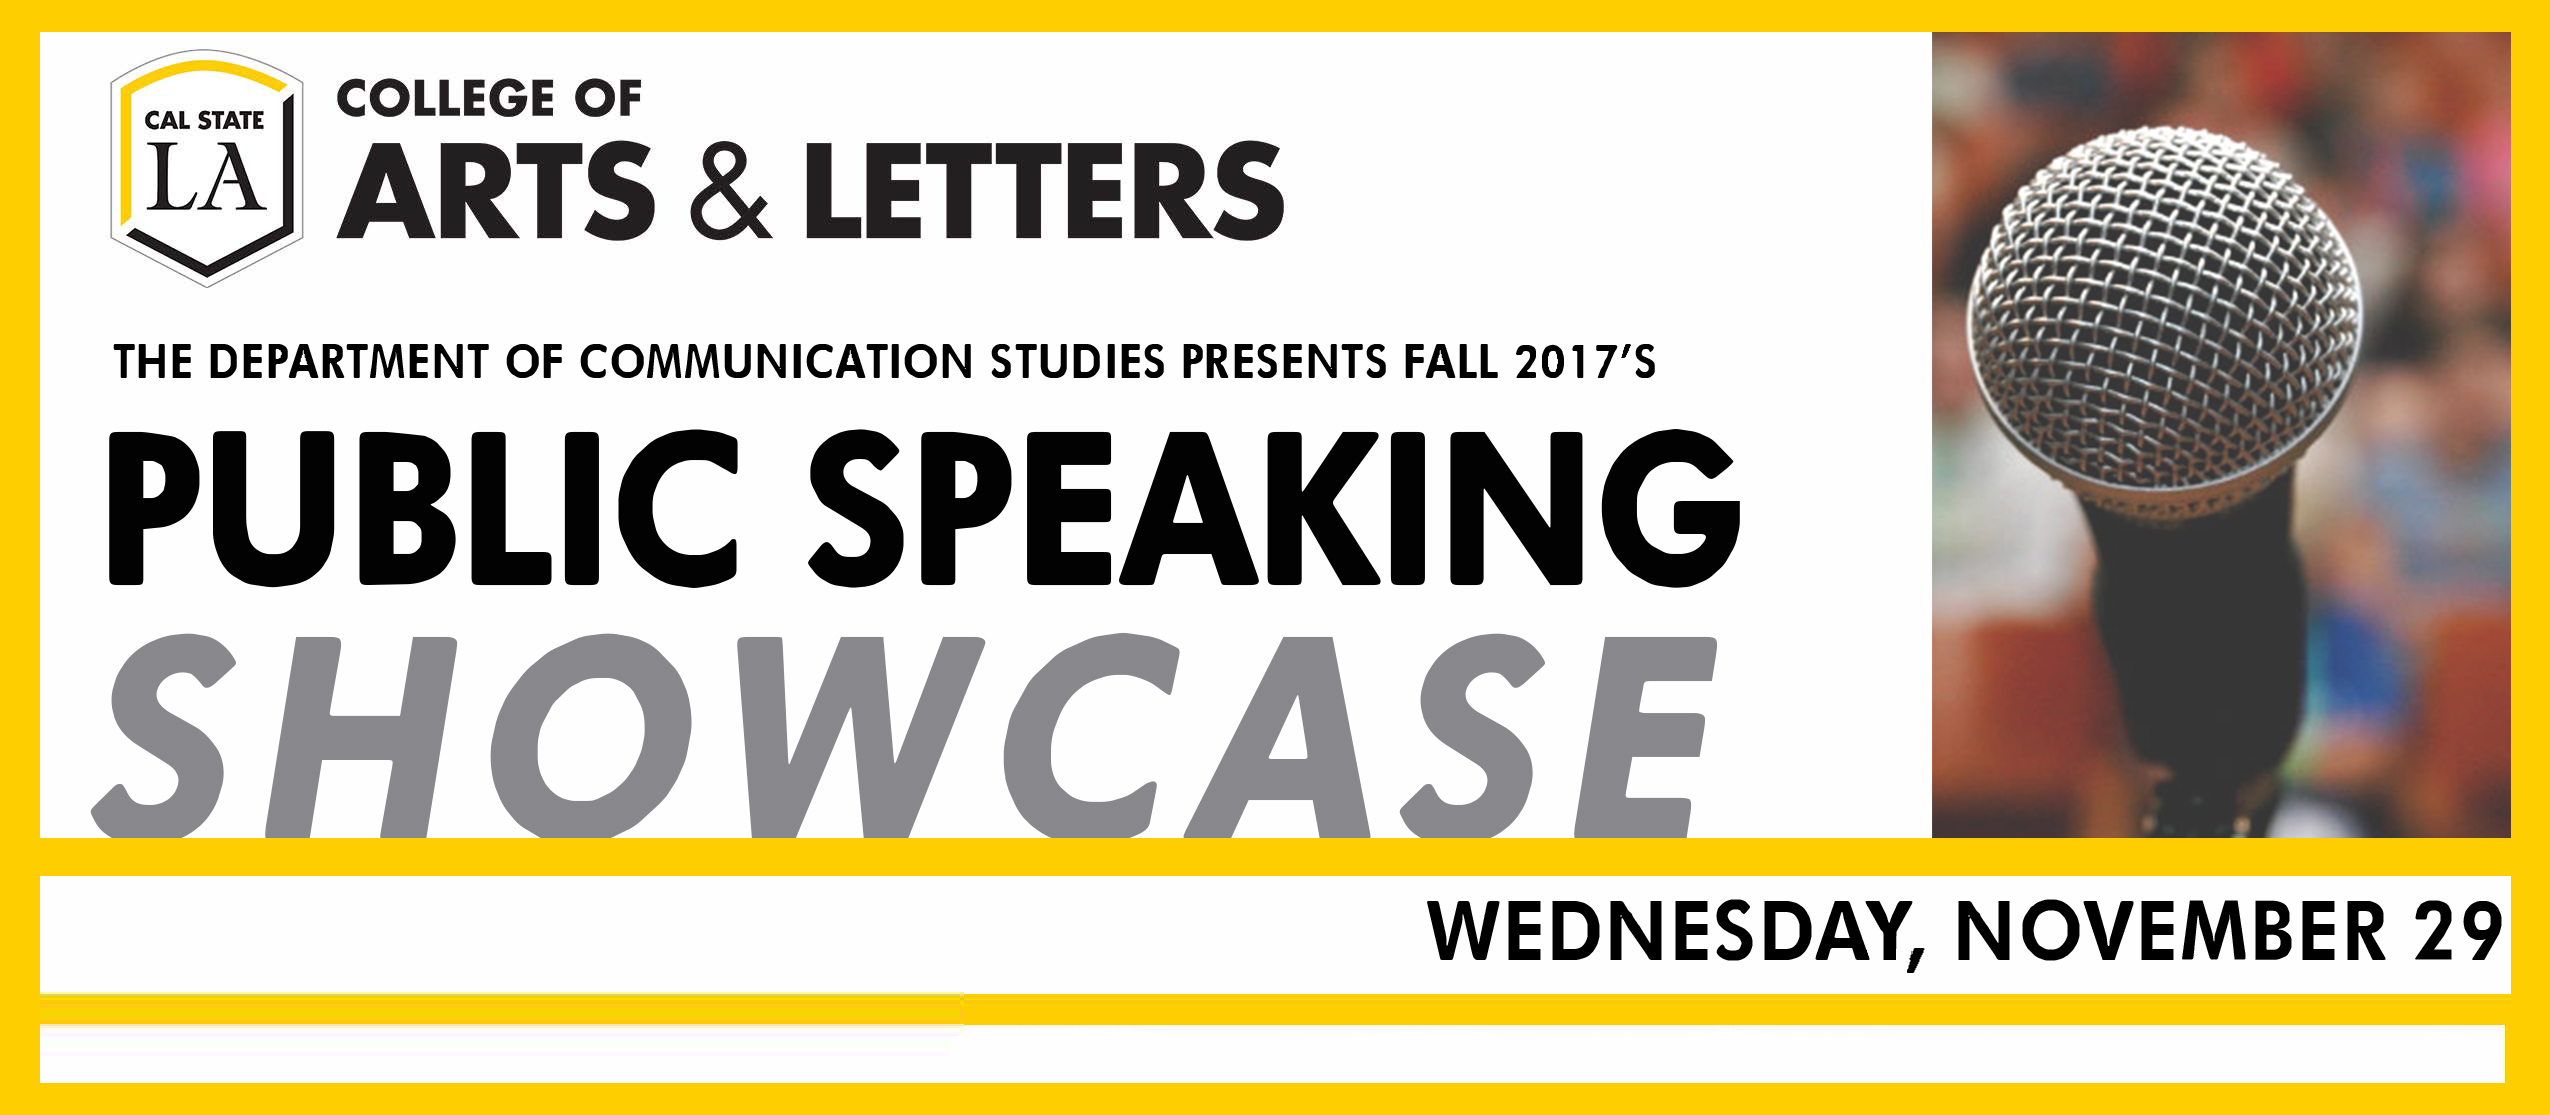 Nov. 29 - Public Speaking Showcase